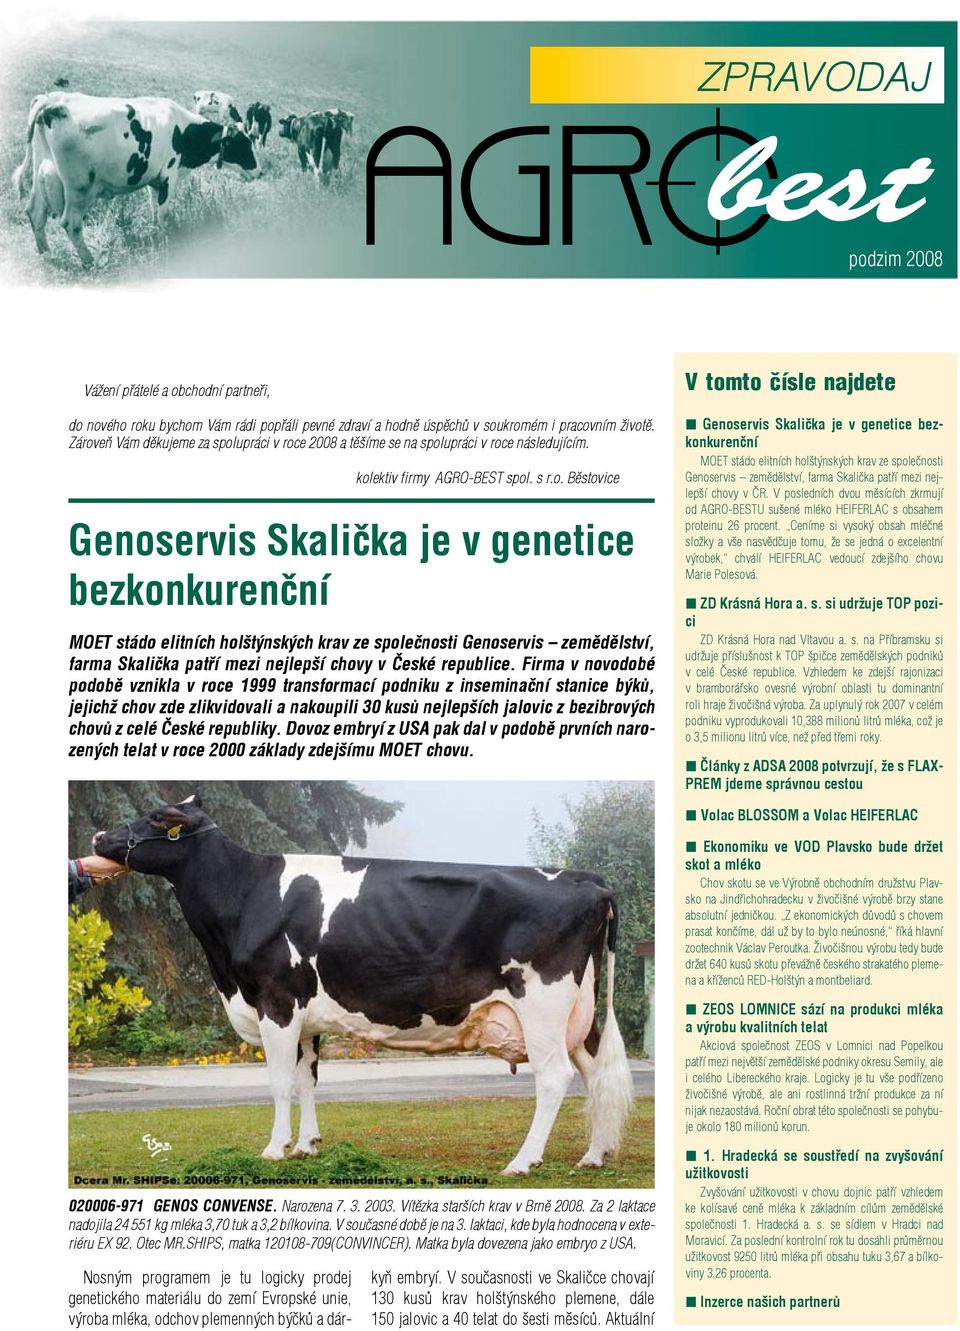 stádo elitních holštýnských krav ze společnosti Genoservis zemědělství, farma Skalička patří mezi nejlepší chovy v České republice.